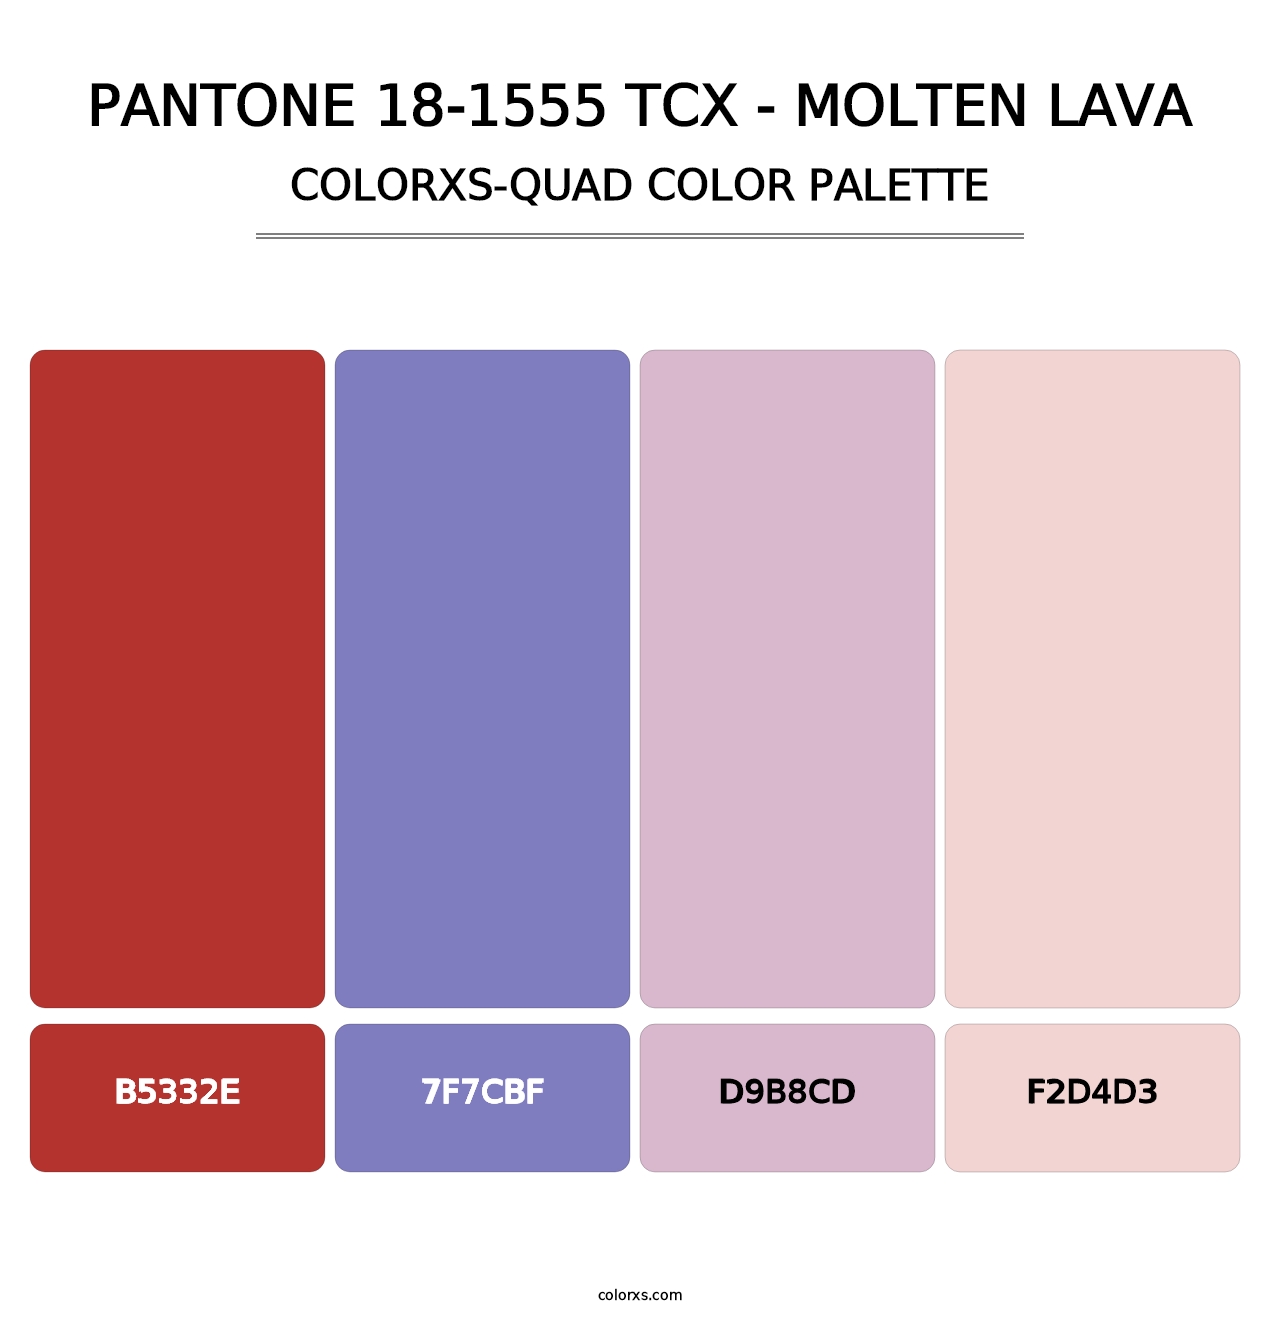 PANTONE 18-1555 TCX - Molten Lava - Colorxs Quad Palette